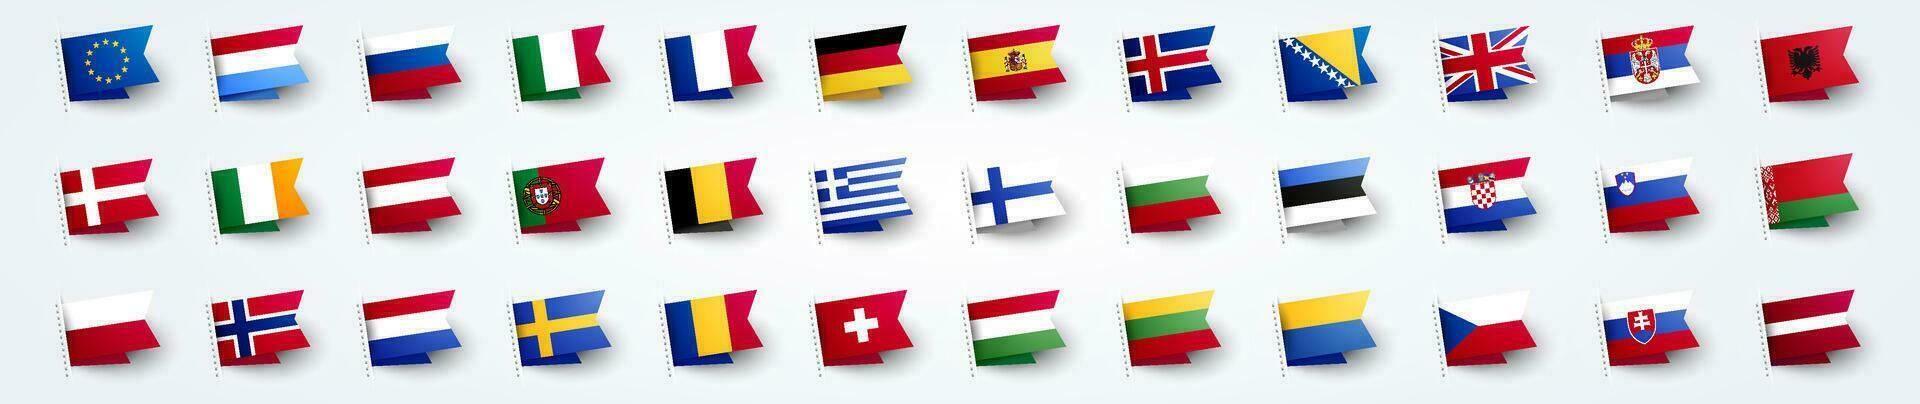 europeu bandeiras conjunto do bandeiras vetor